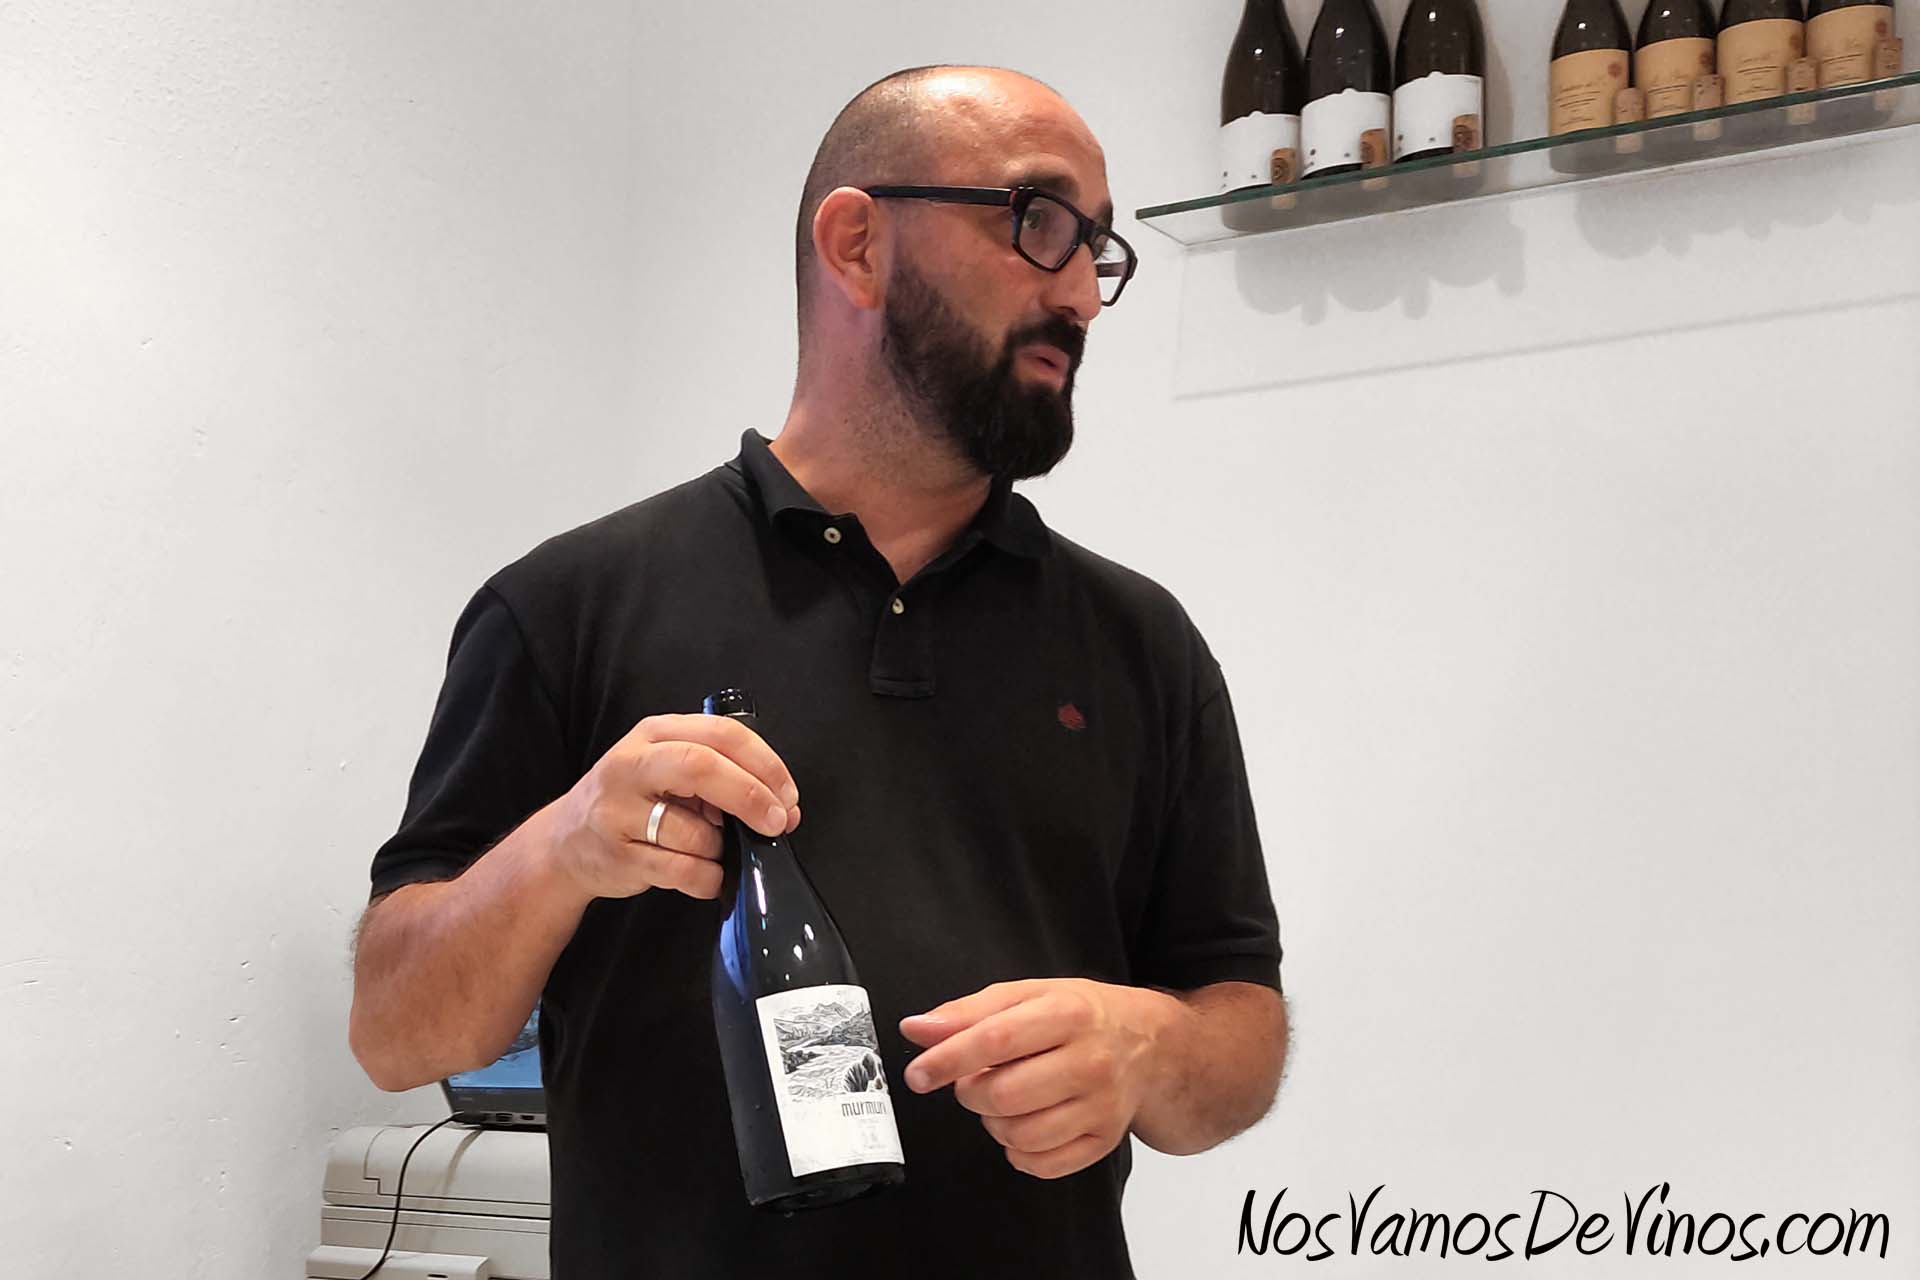 Cata de vinos de celler Mas Doix en Outlet de Vinos. Óscar Piñero Zamora